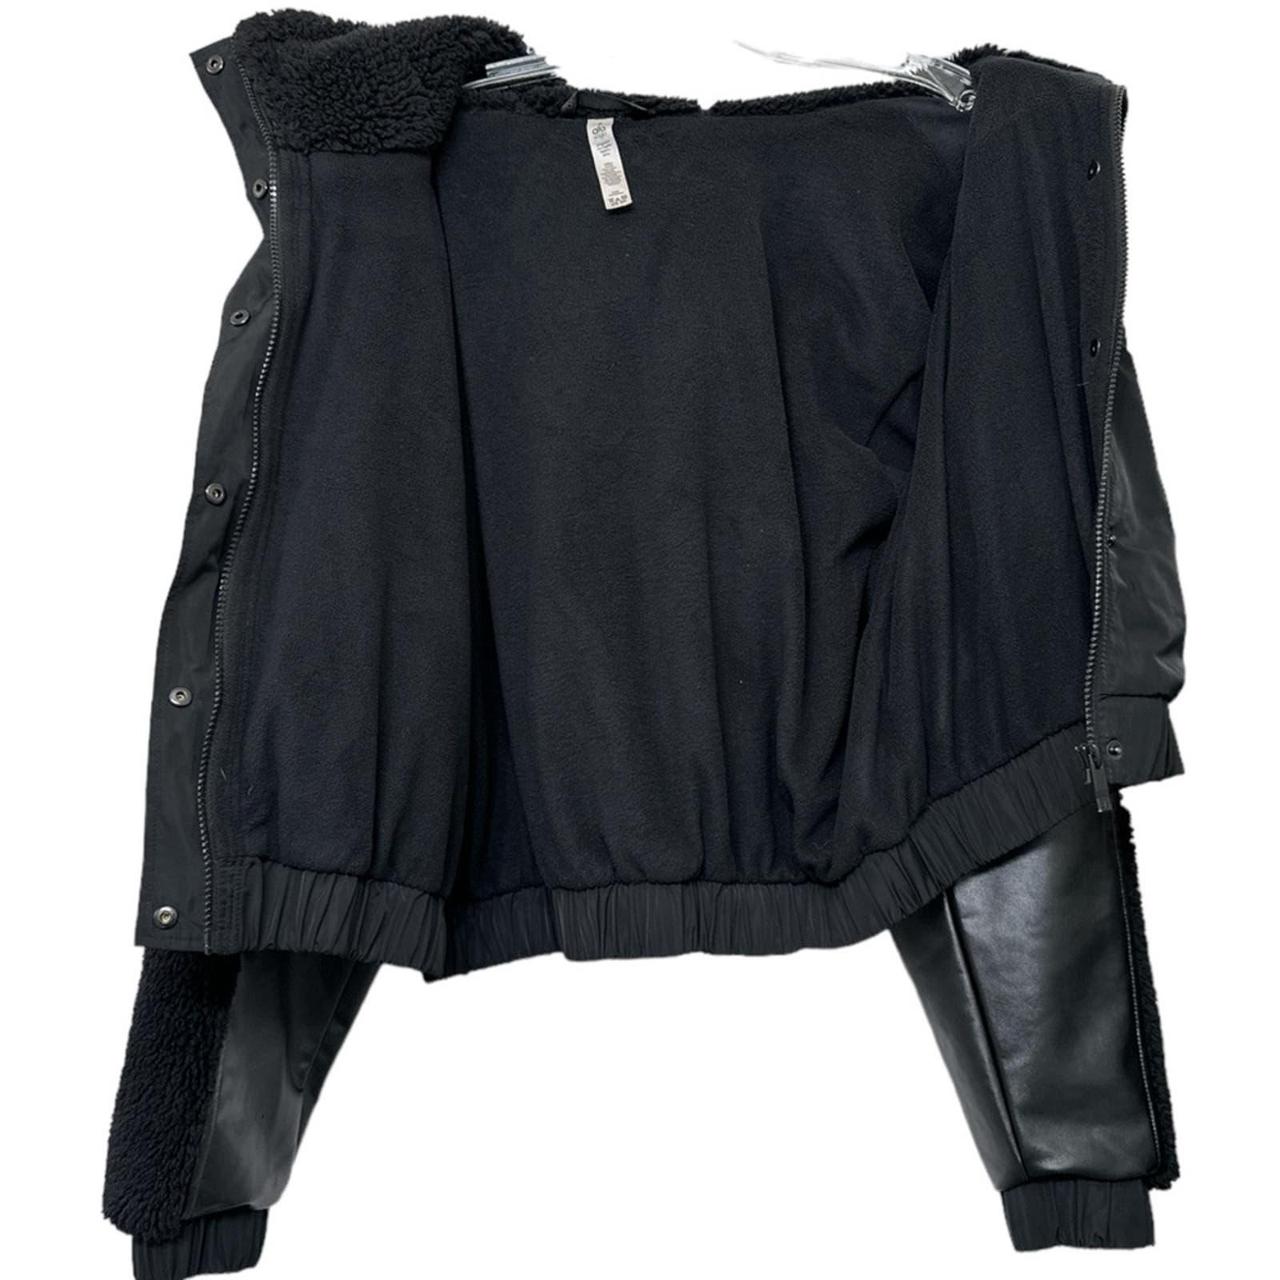 Sherpa Utility Gear Jacket in Black by Alo Yoga